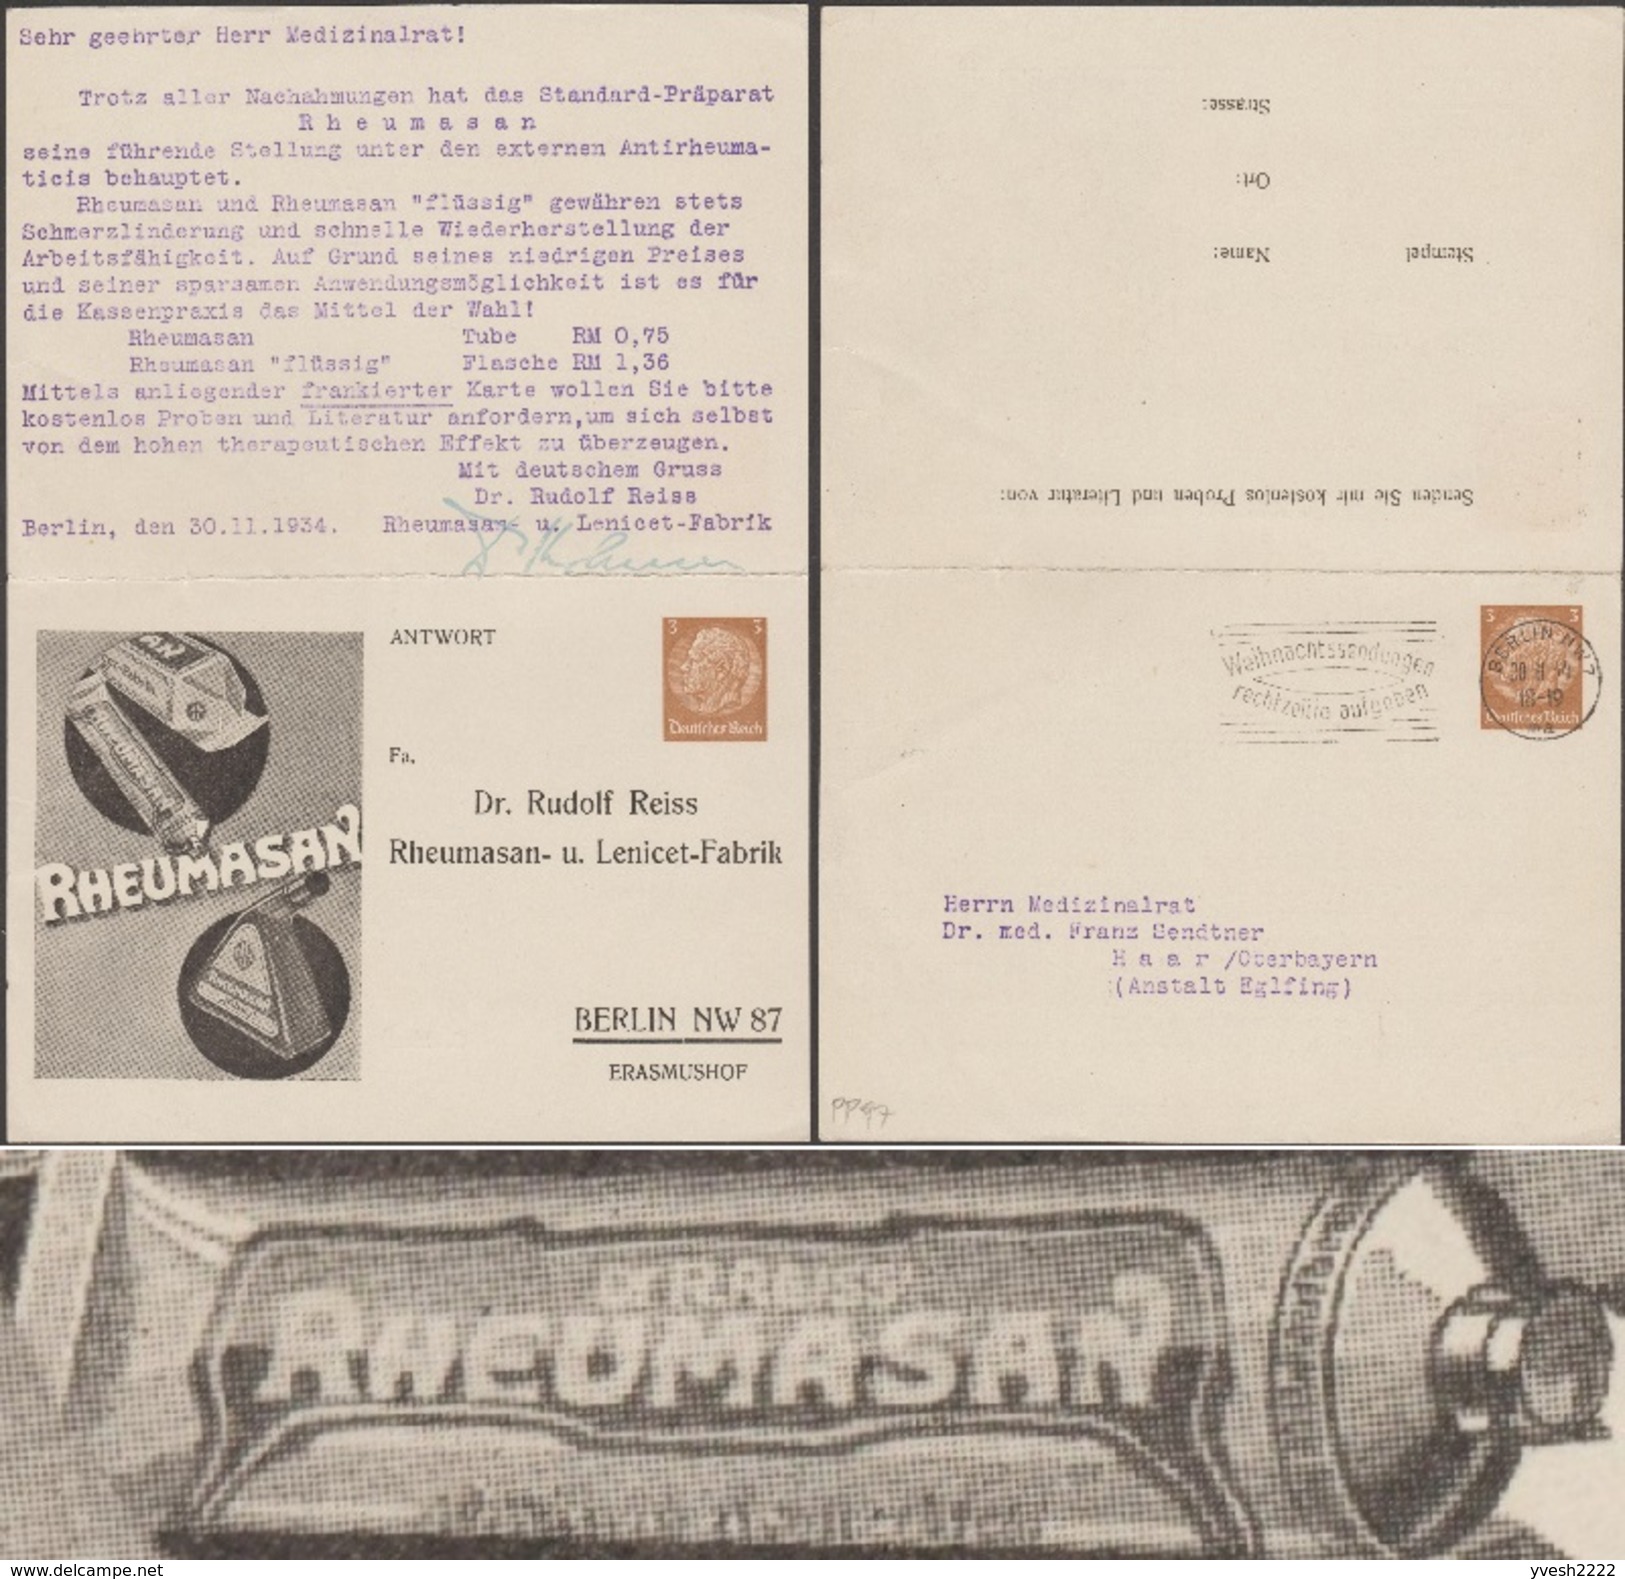 Allemagne 1934. Entier Postal D'un Laboratoire Pharmaceutique Adressé à Un Médecin. Rhumatisme, Bouteille, Pommade - Pharmacy